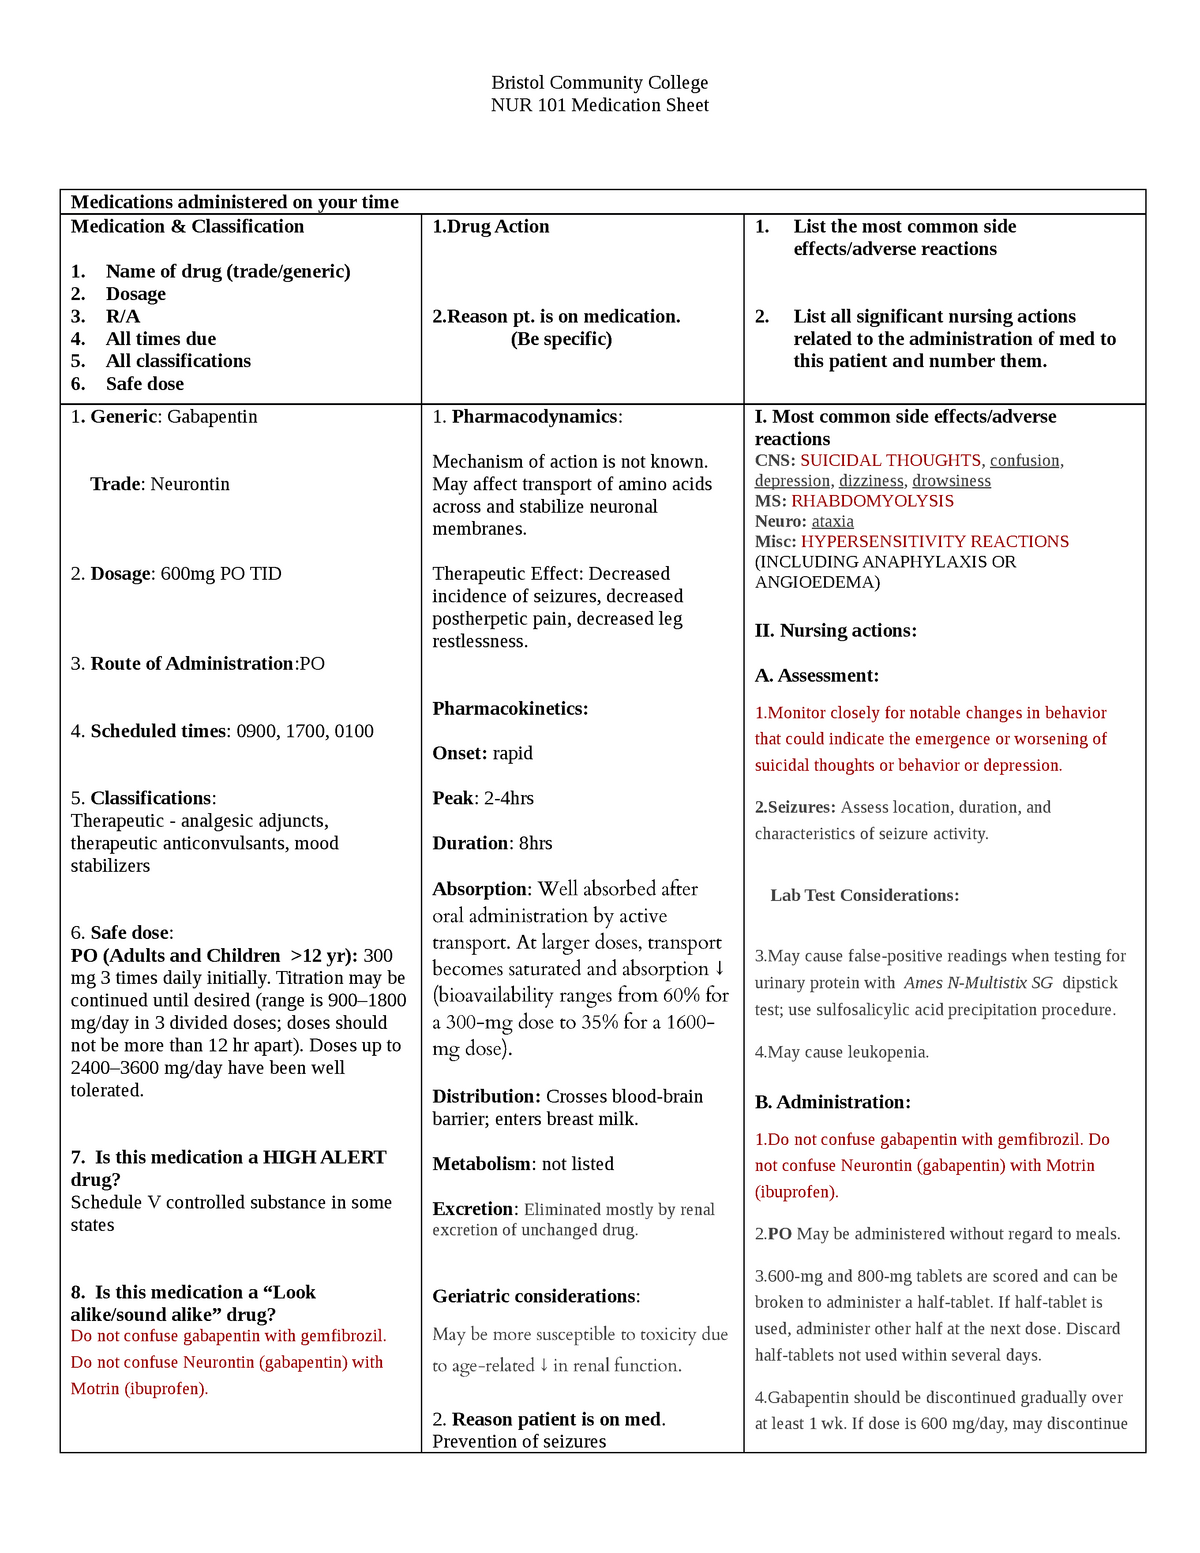 Gabapentin drug sheet Bristol Community College NUR 101 Medication